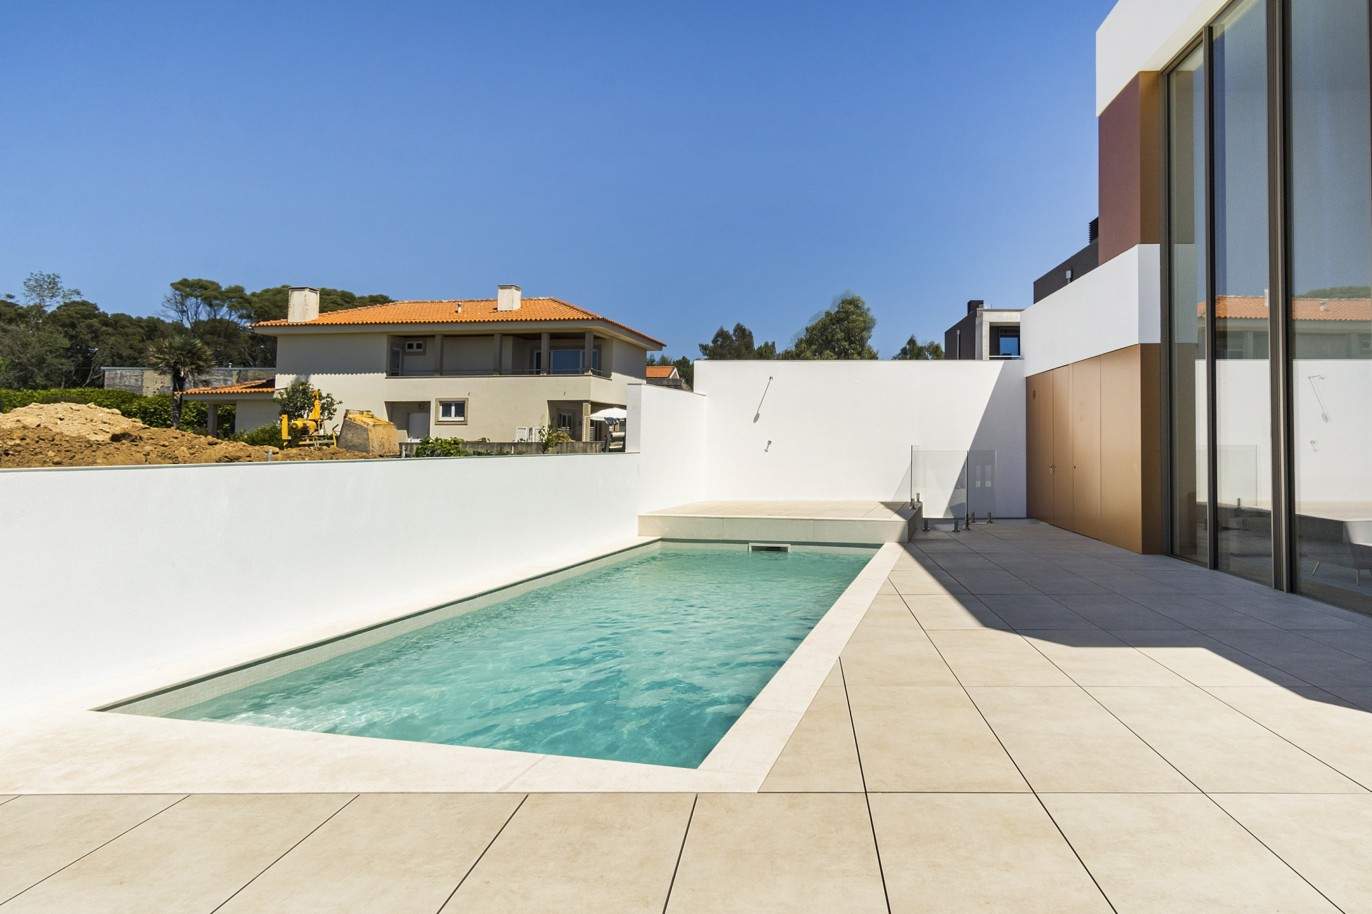 Luxuriöse Villa mit Pool und Garten, zu verkaufen, in Canidelo, V. N. Gaia, Porto, Portugal_208006